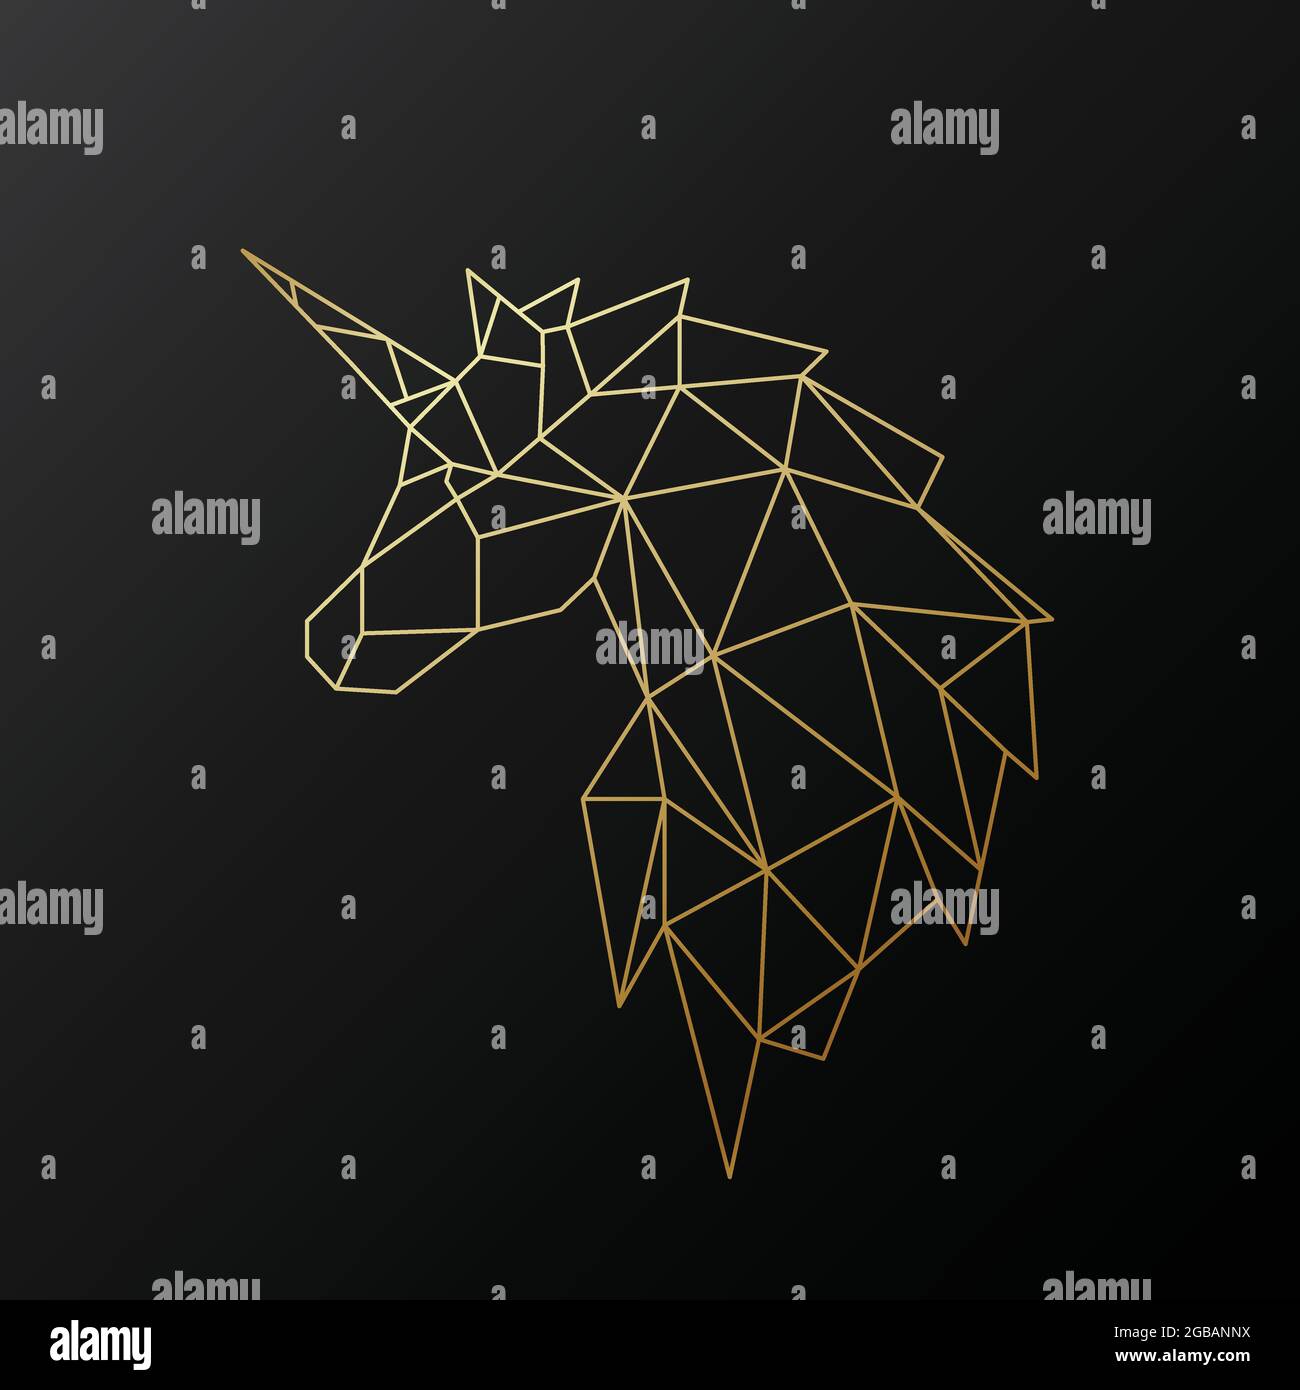 Goldene polygonale Einhorn-Illustration isoliert auf schwarzem Hintergrund. Geometrisches Tieremblem. Vektorgrafik. Stock Vektor